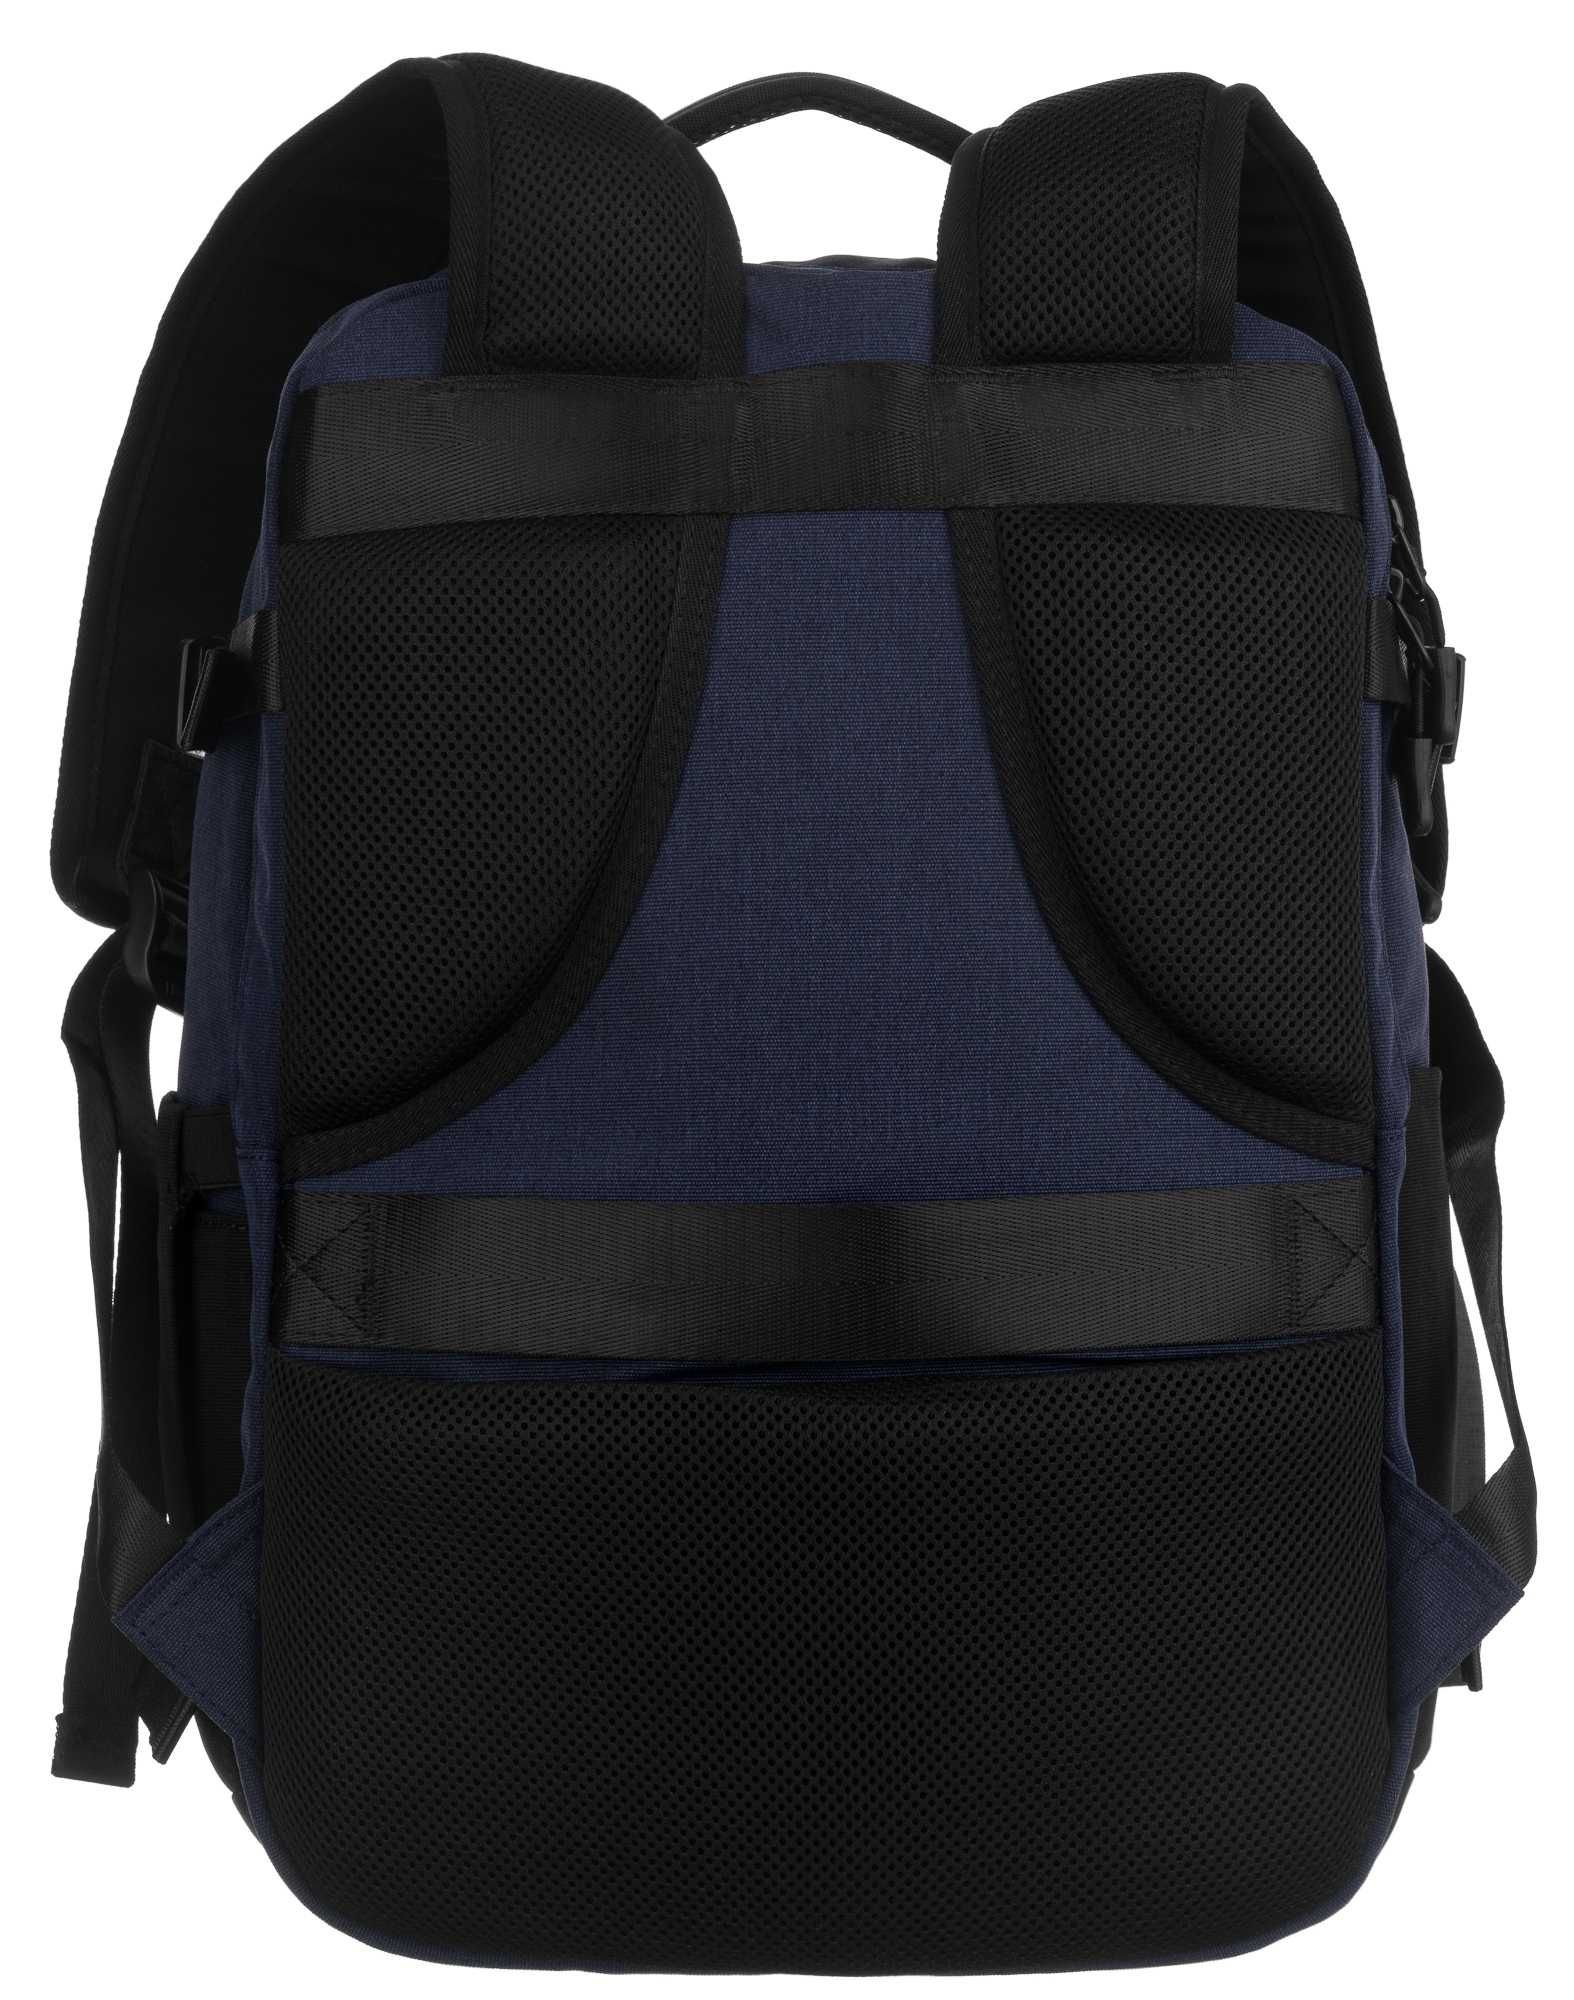 HIMAWARI pojemny plecak podróżny bagaż podręczny na laptop granatowy